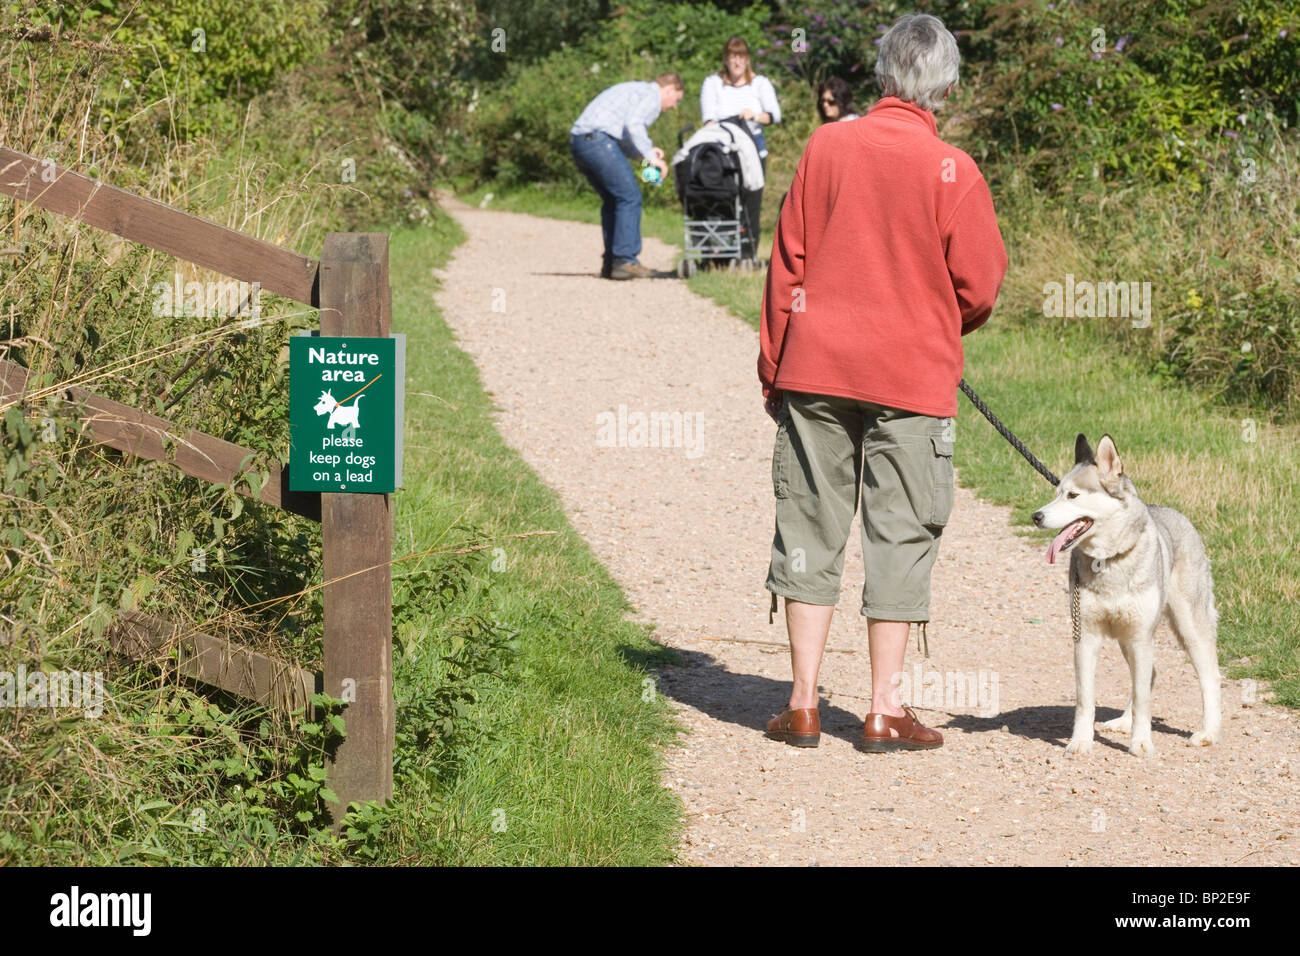 Signer la désignation d'une zone naturelle à l'intérieur de laquelle les chiens doivent être tenus en laisse. Whitlingham Park, Norwich, Norfolk, UK Banque D'Images